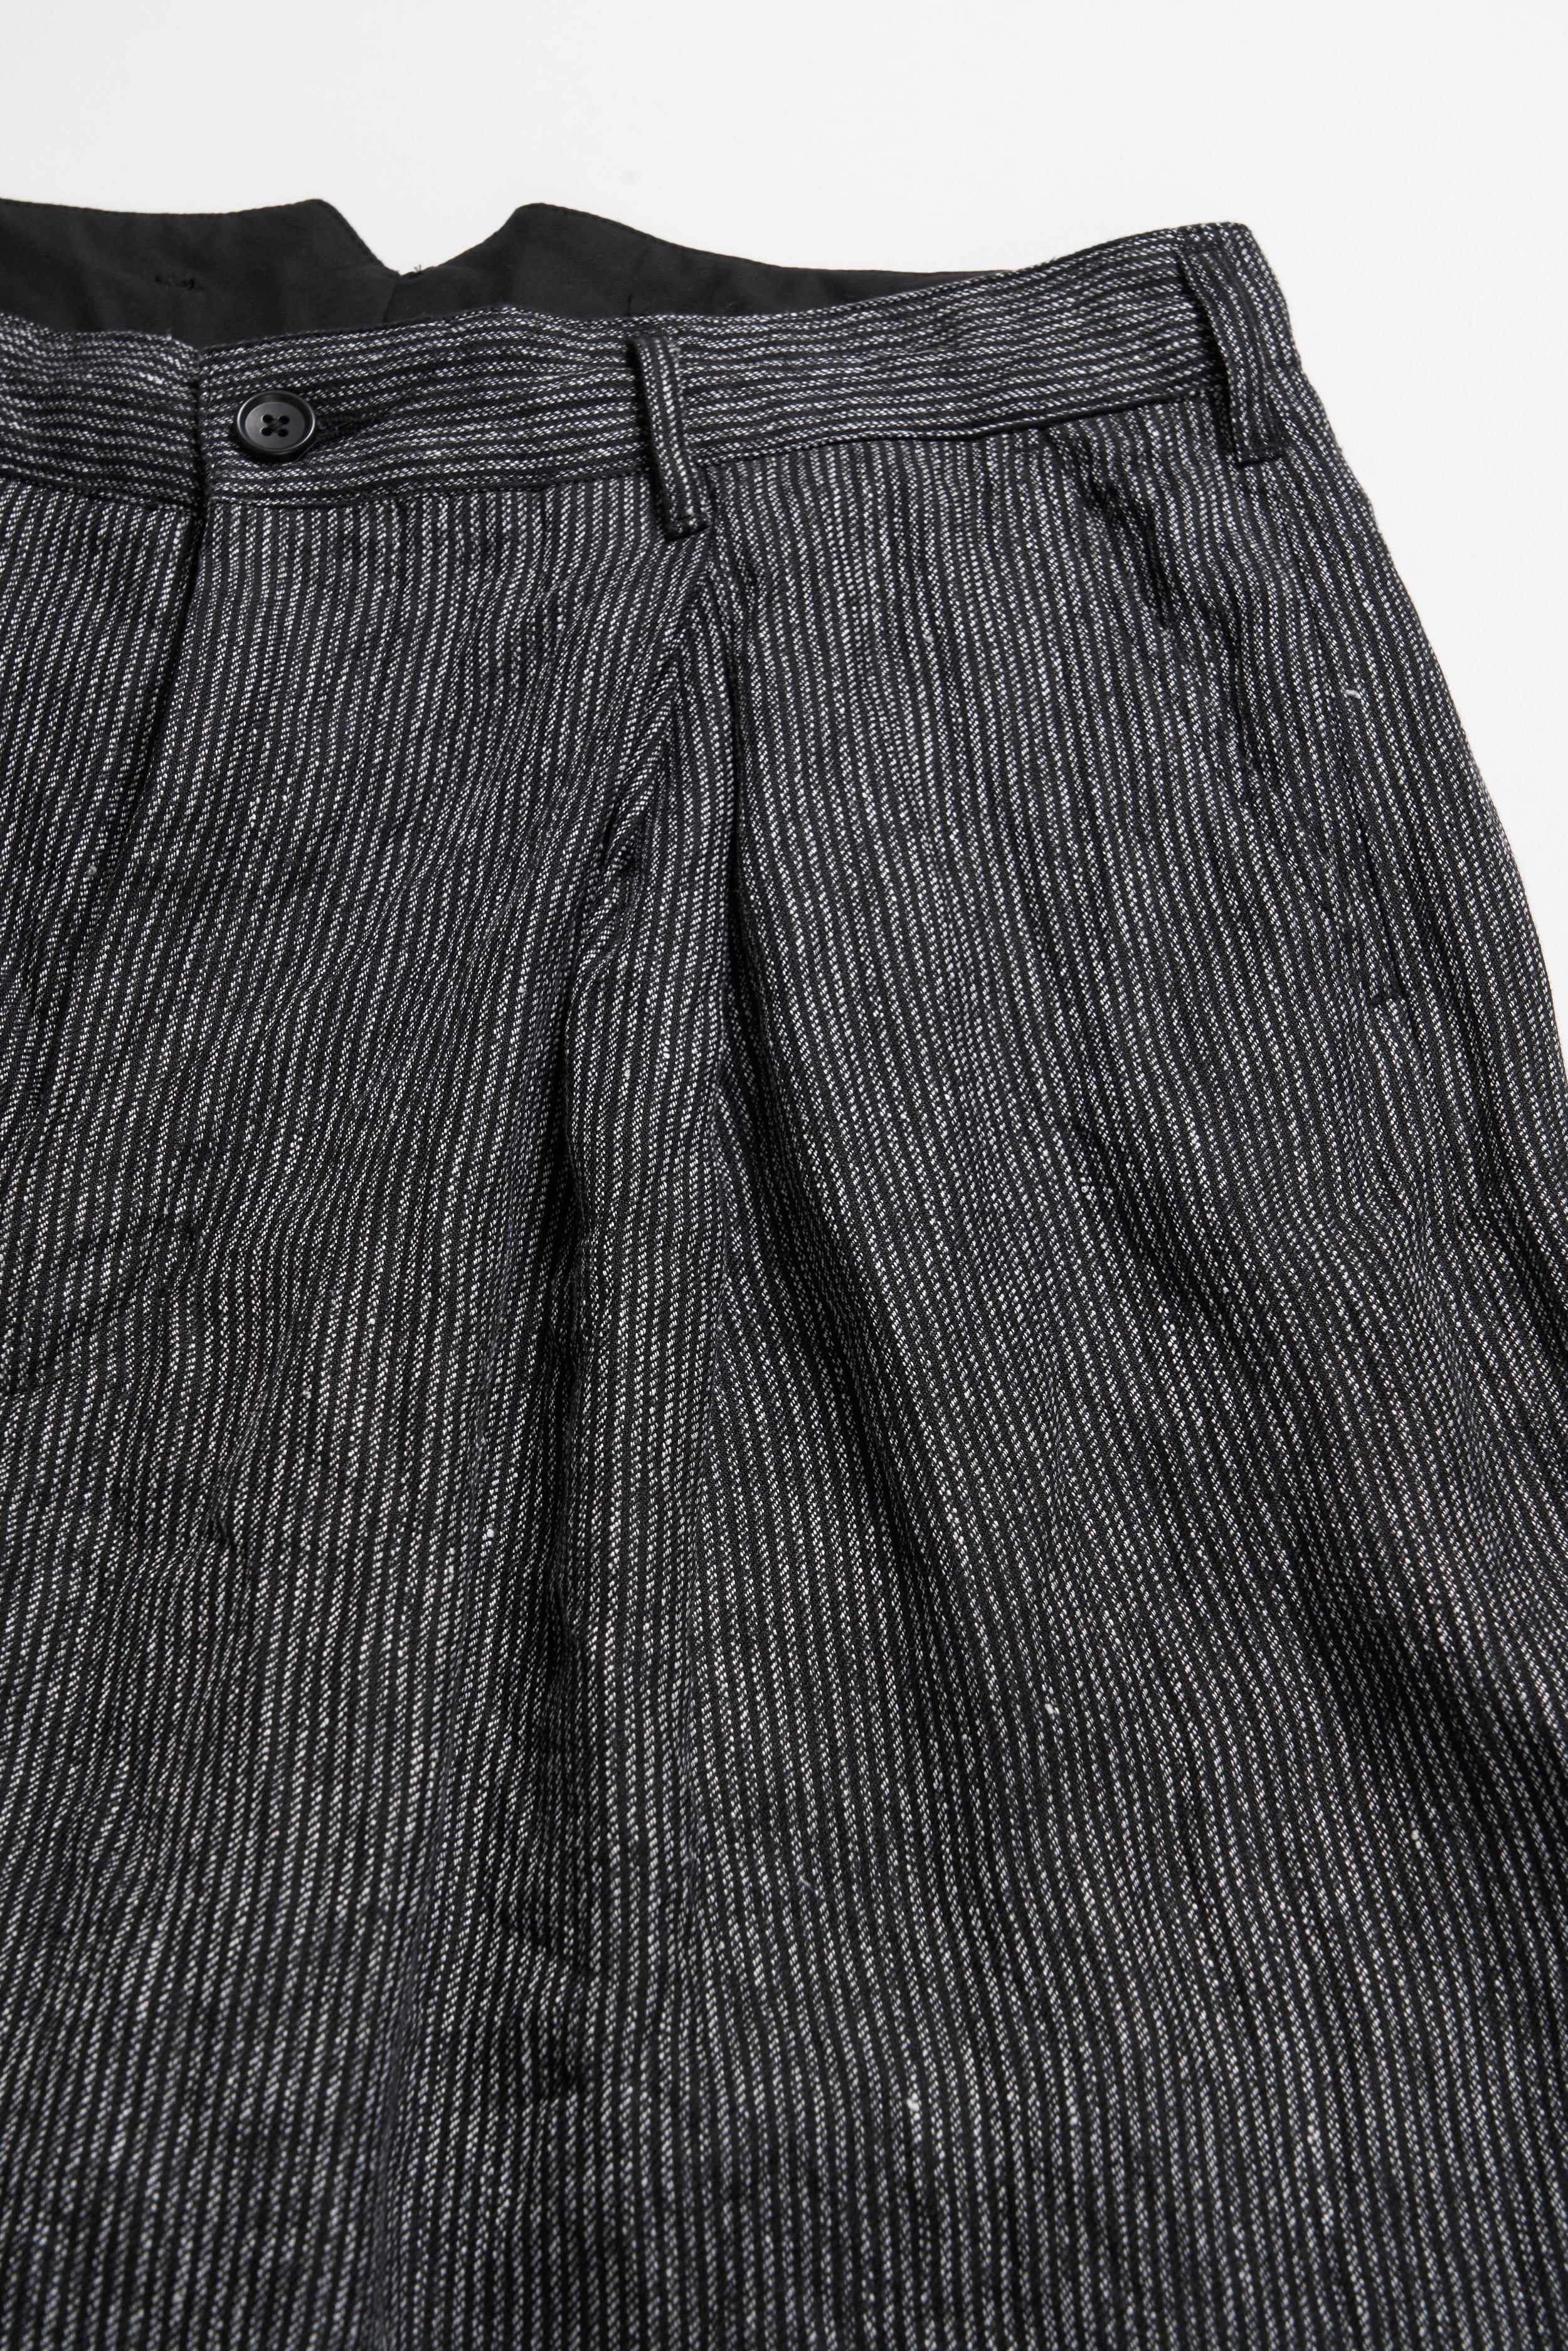 WP Pant - Black / Grey Linen Stripe